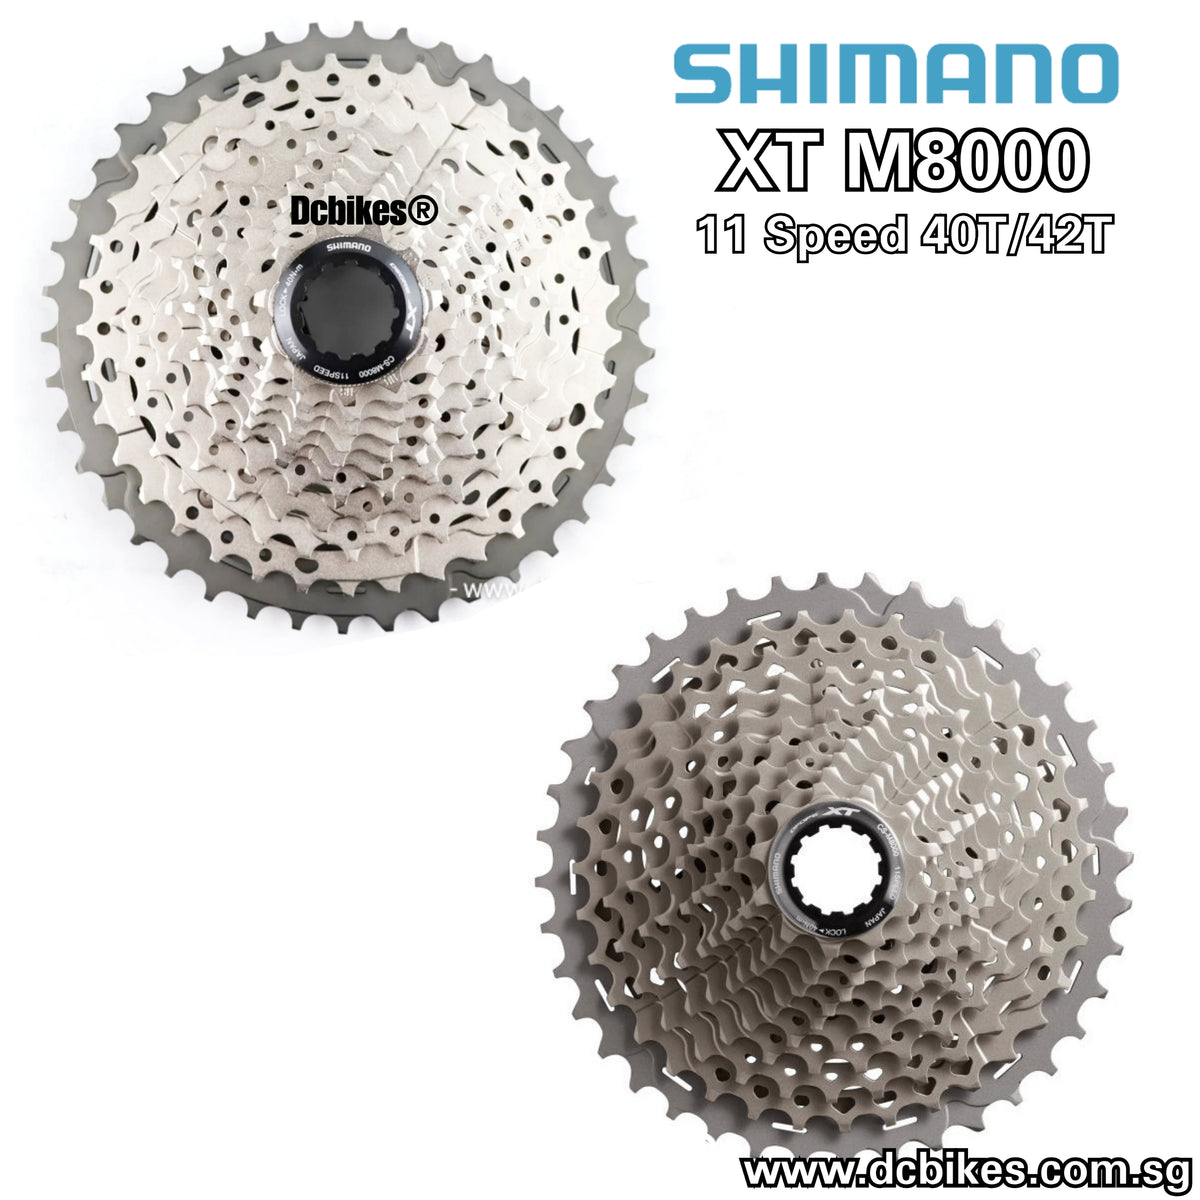 Shimano XT CS-M8000 11 Speed Cassette